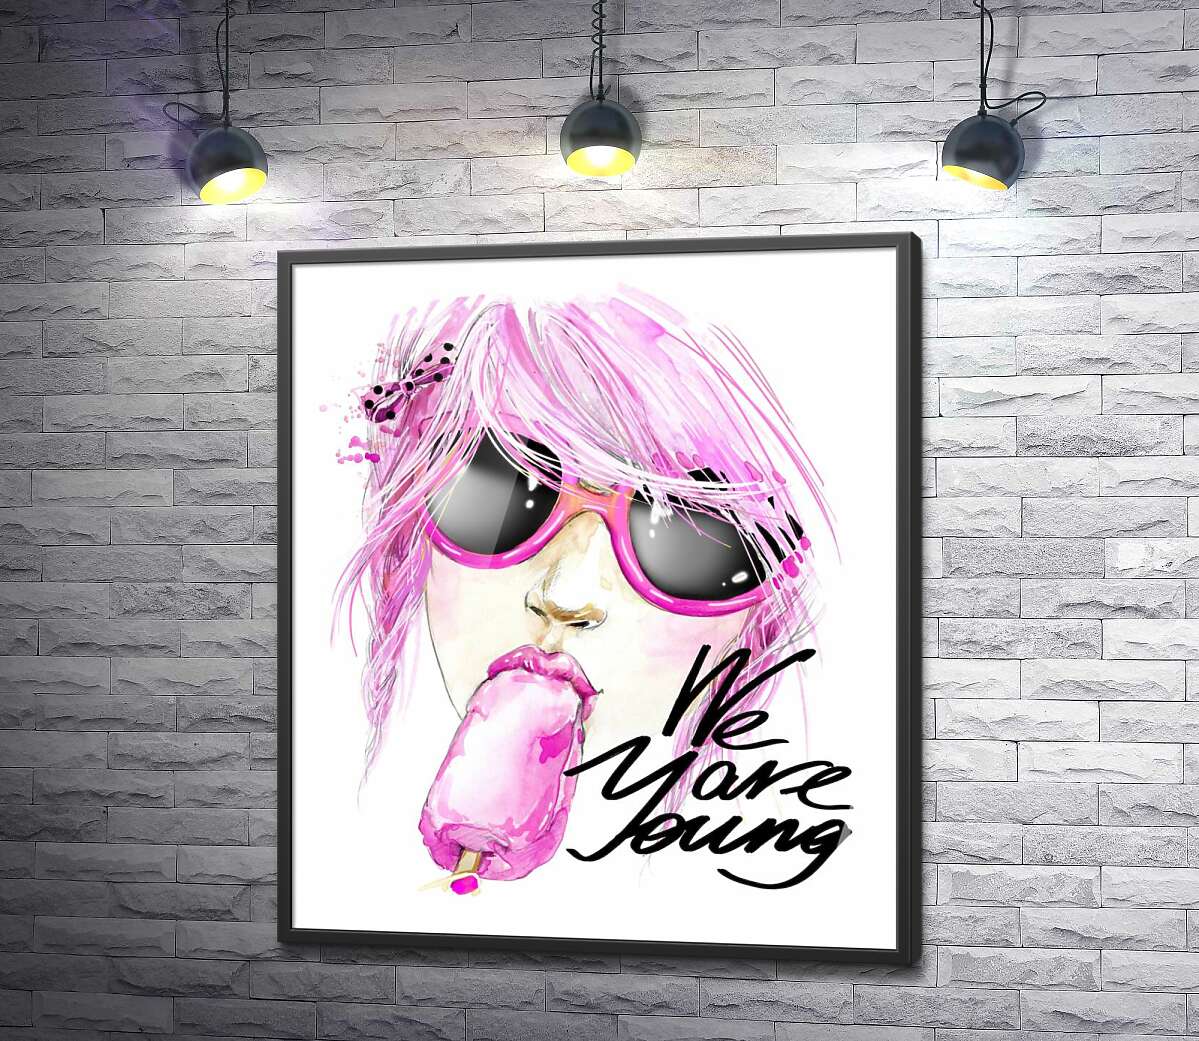 постер Девушка с розовыми волосами смакует мороженое рядом с надписью "we are young"